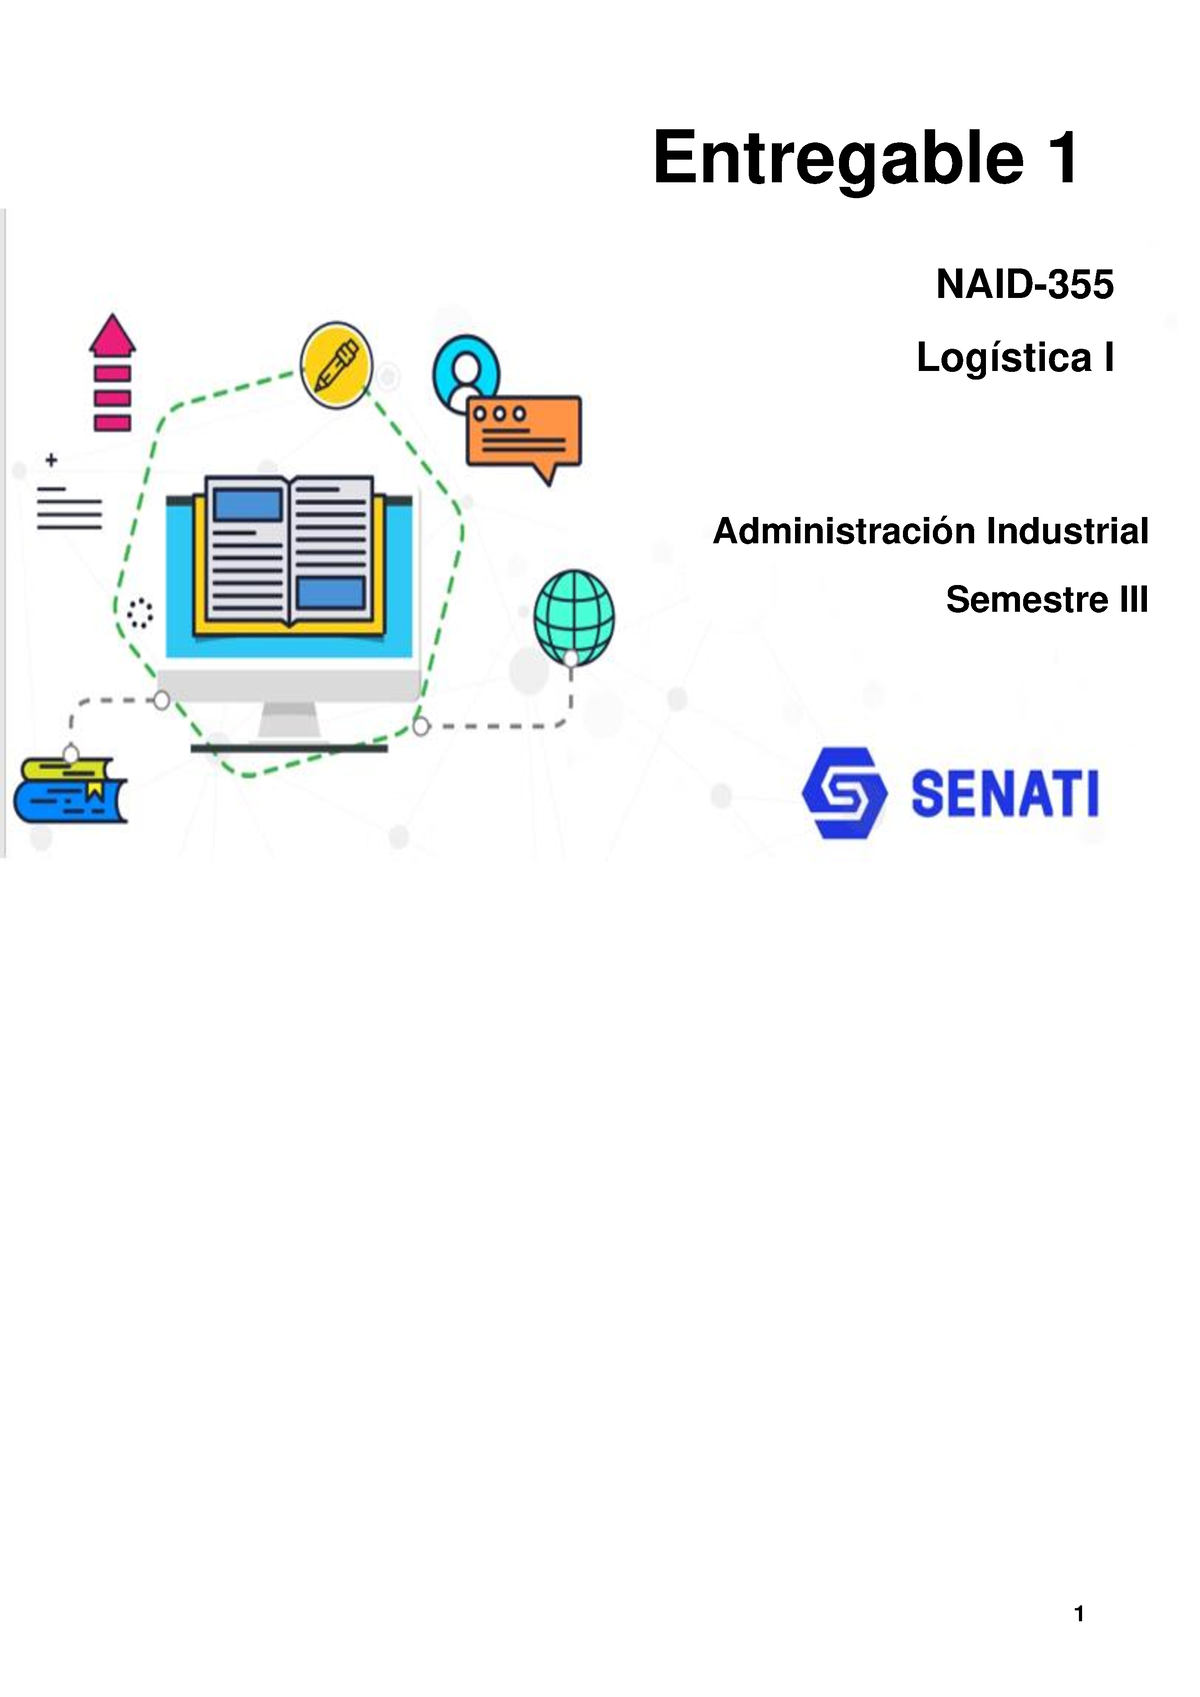 NAID NAID355 Entregable 1 Administración logística SENATI Studocu